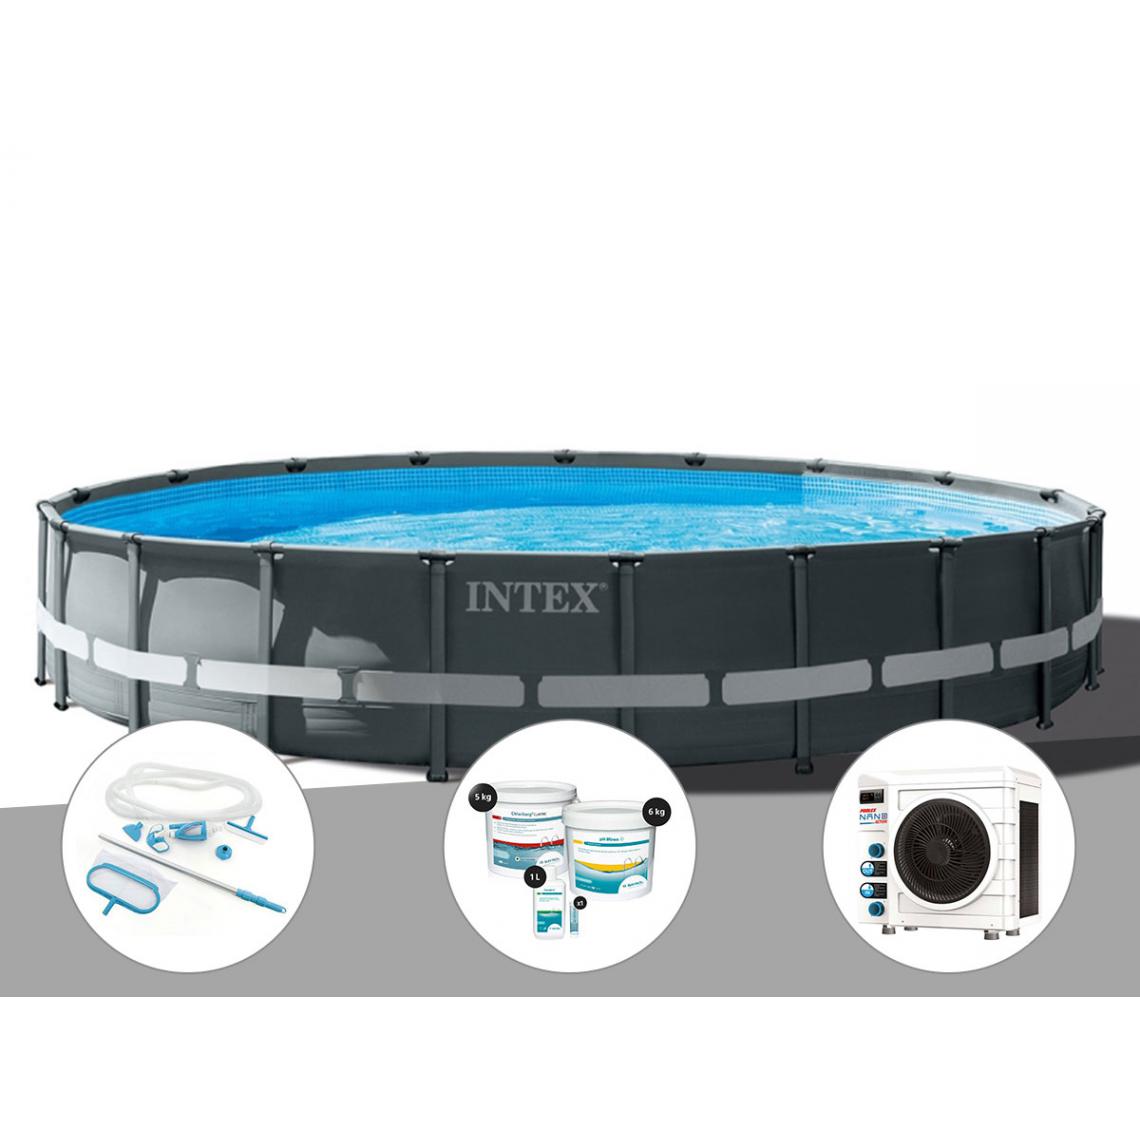 Intex - Kit piscine tubulaire Intex Ultra XTR Frame ronde 6,10 x 1,22 m + Kit d'entretien + Kit de traitement au chlore + Pompe à chaleur - Piscine Tubulaire